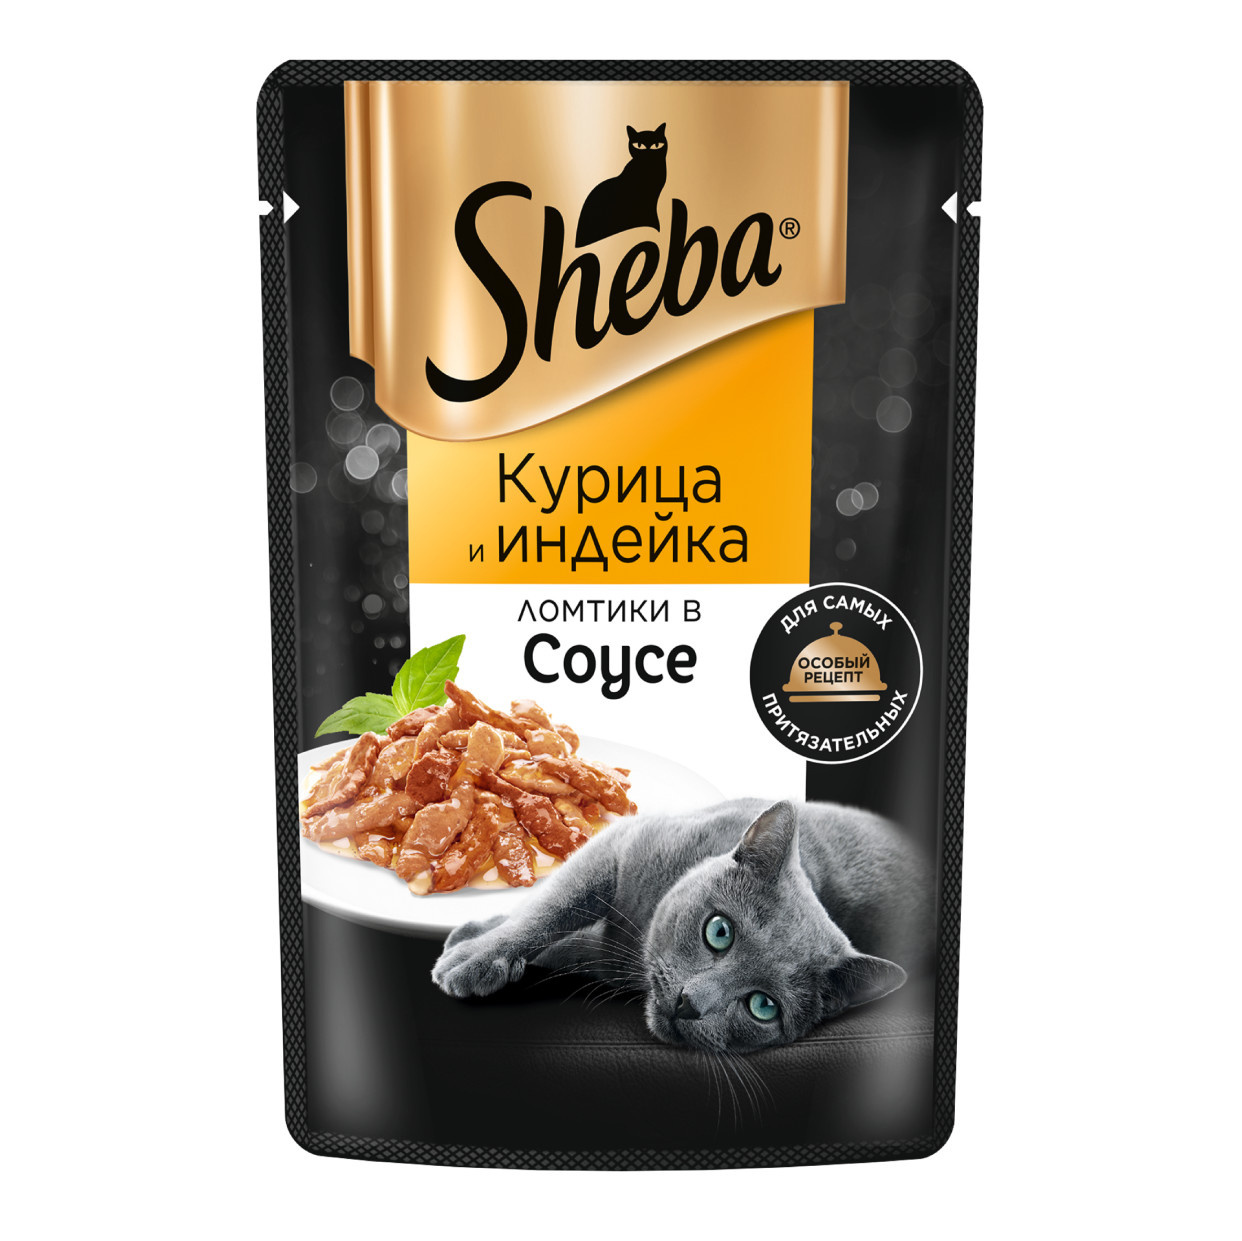 Sheba Sheba влажный корм для кошек «Ломтики в соусе с курицей и индейкой» (75 г)